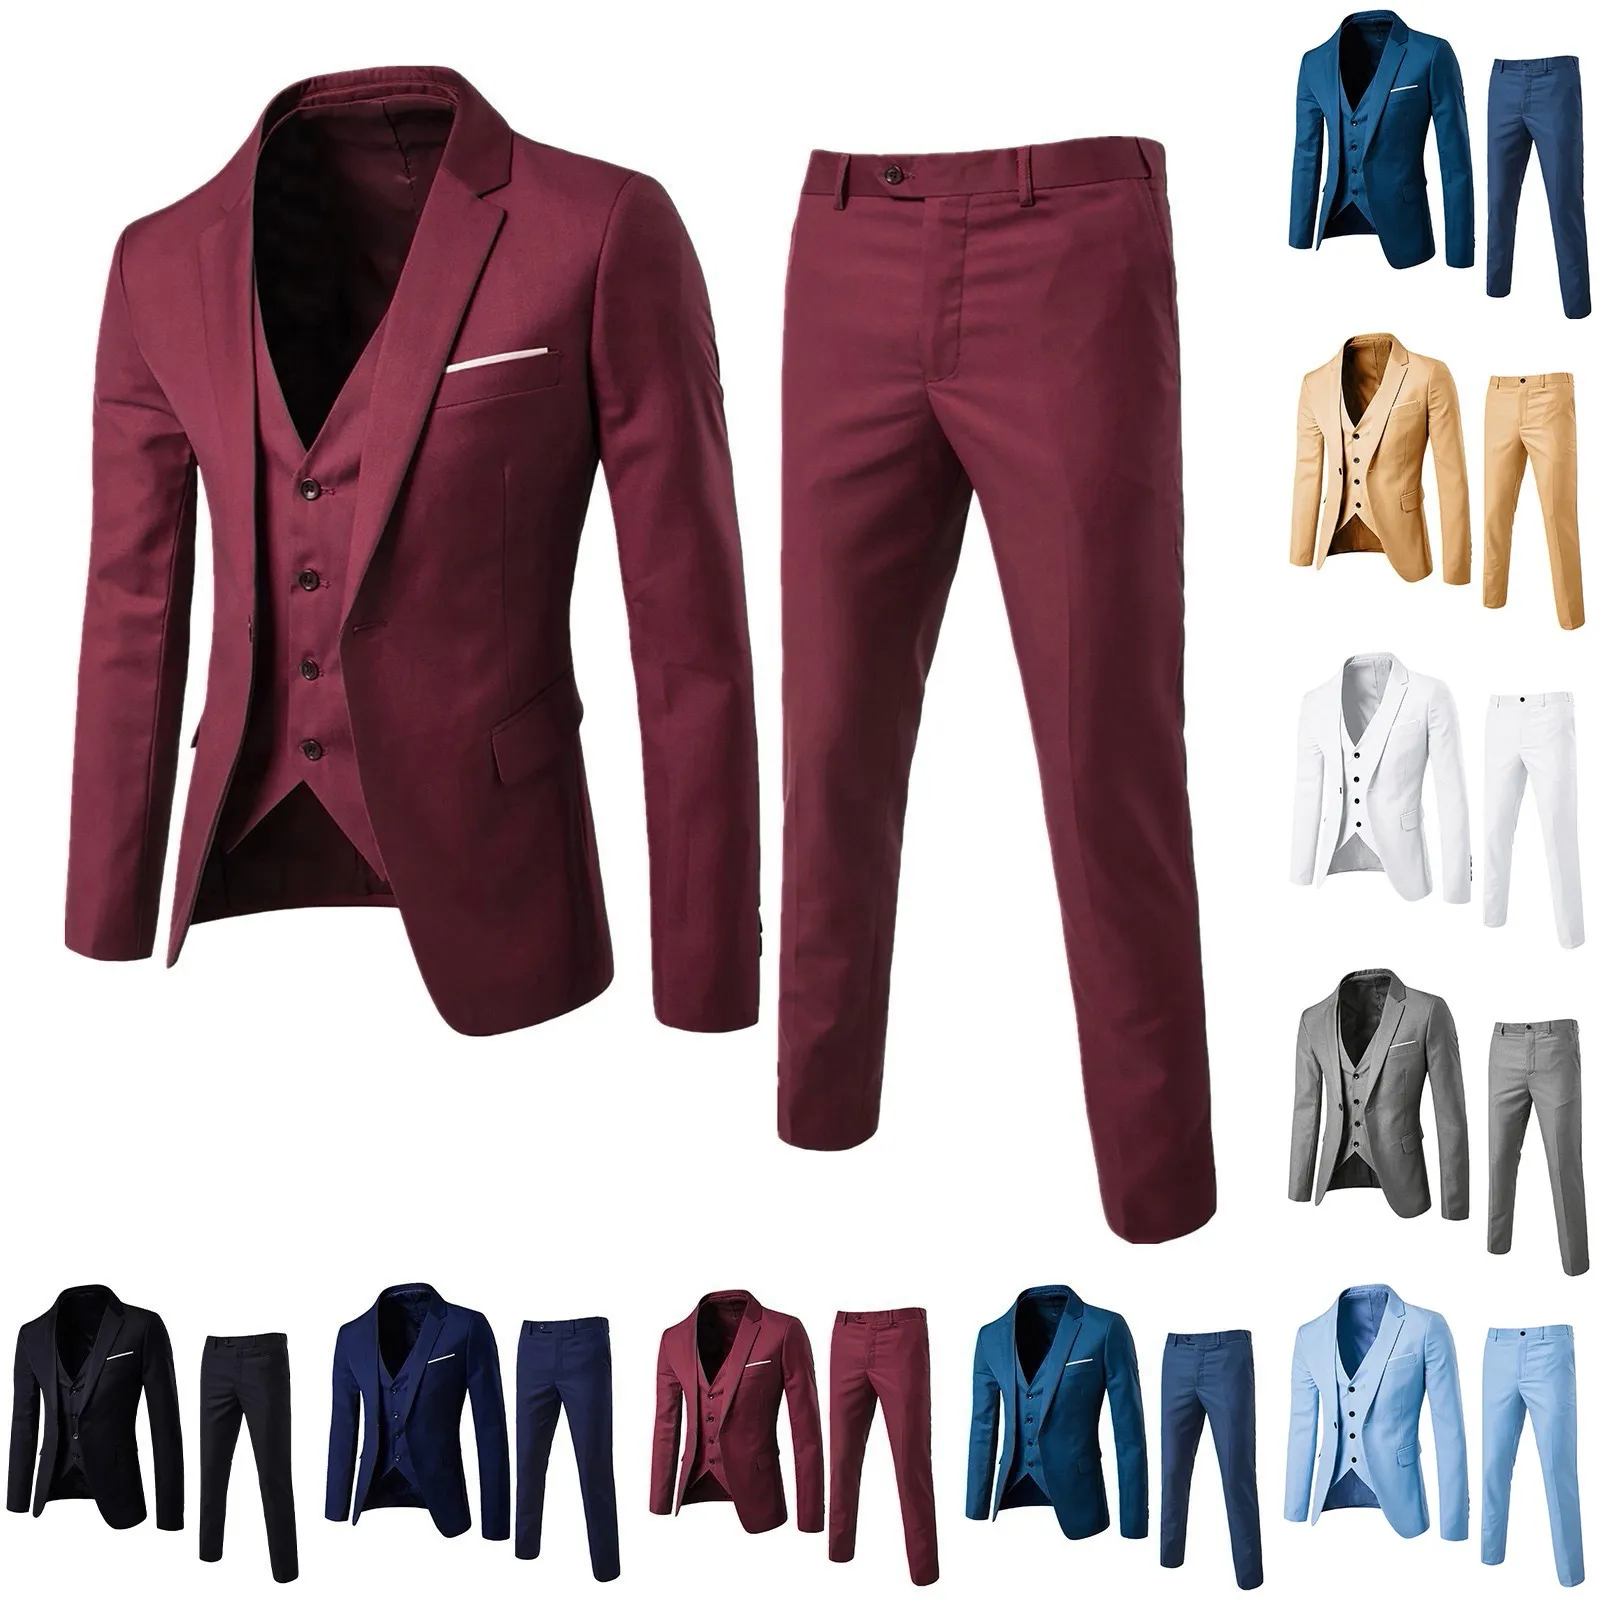 

Men’s Suit 3 Piece Blazer Jacket+Vest+Pants Set Business Office Wedding Evening Party Formal Coat Groom Groomsmen Tuxedo Outfits